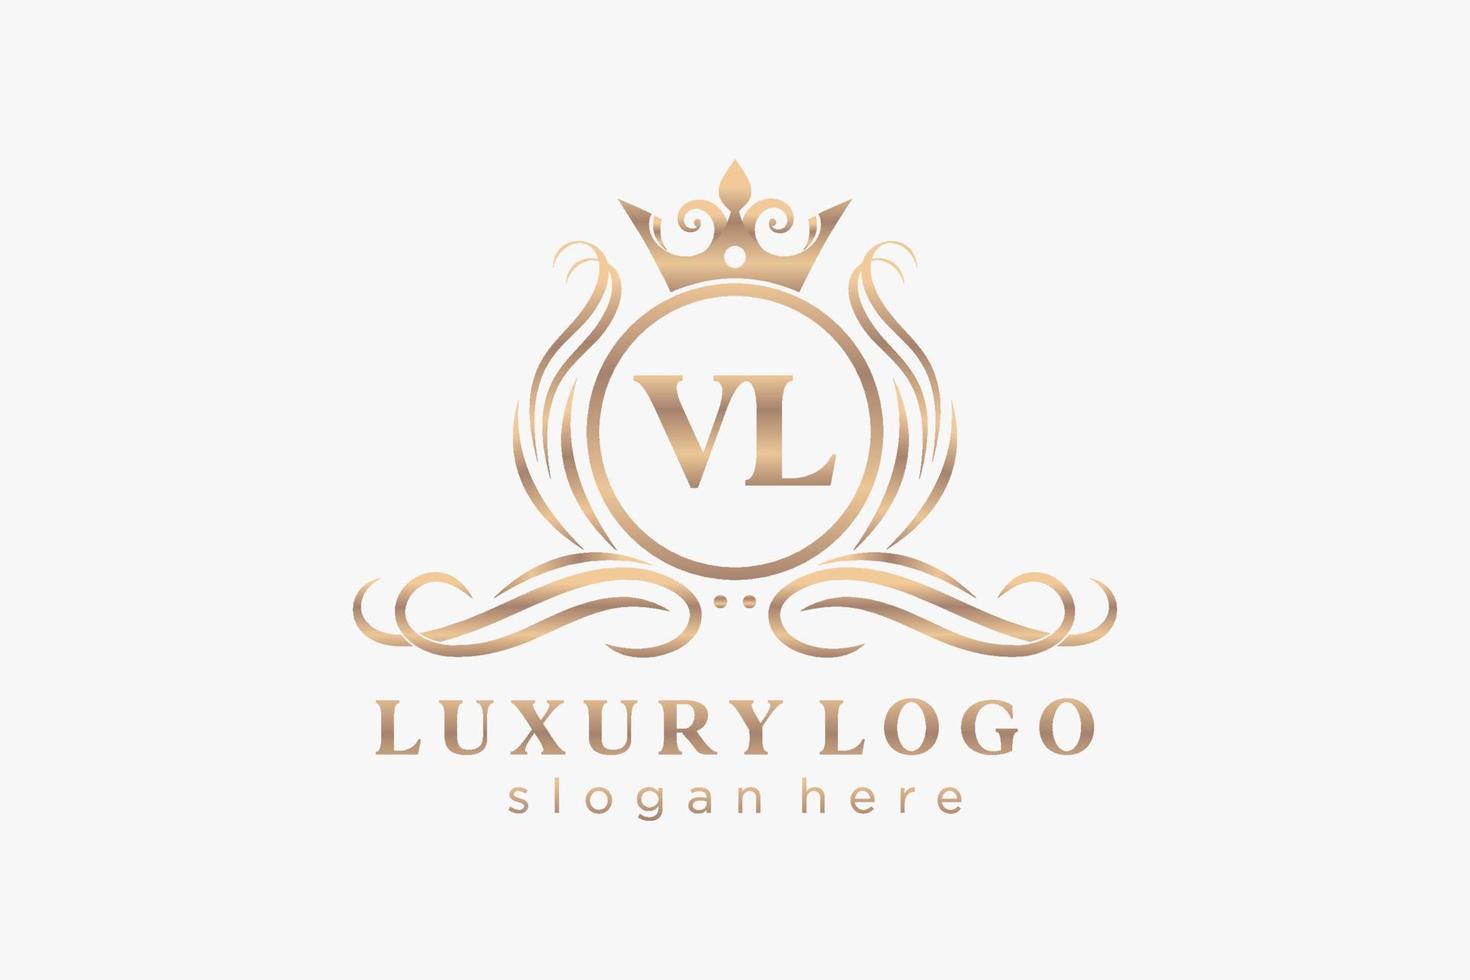 modelo de logotipo de luxo real carta vl inicial em arte vetorial para restaurante, realeza, boutique, café, hotel, heráldica, joias, moda e outras ilustrações vetoriais. vetor